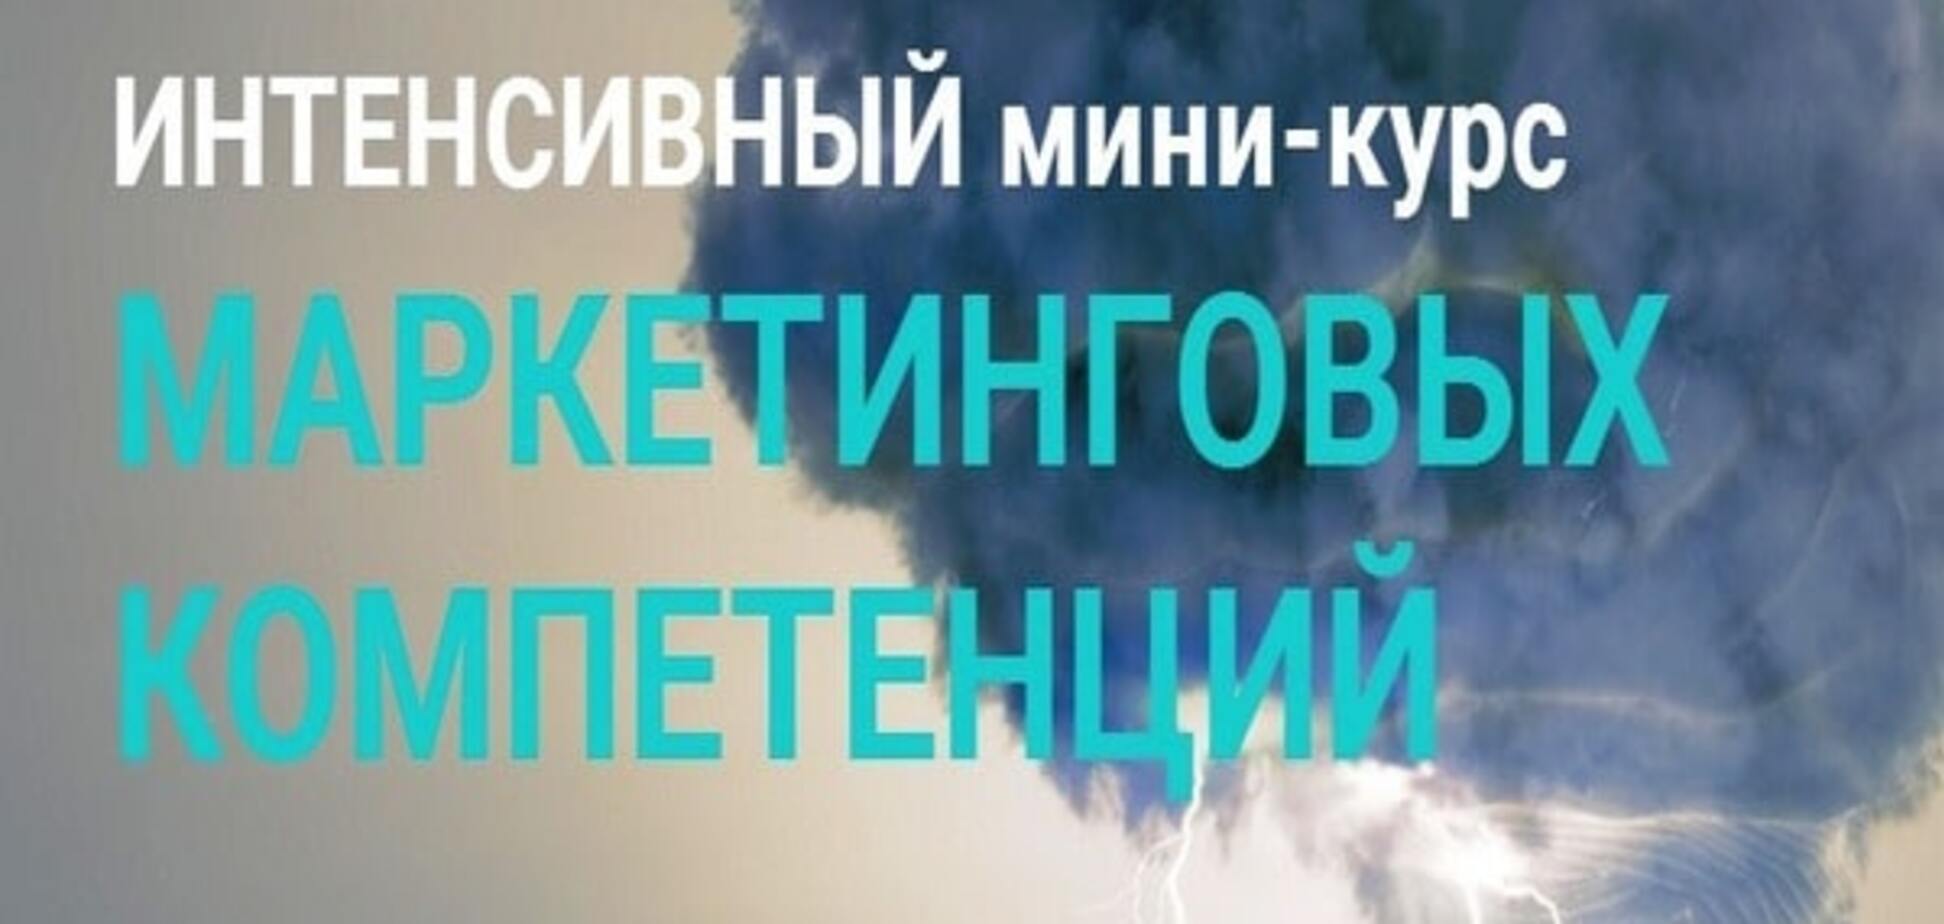 26-28 октября в Киеве пройдет первый интенсивный курс 'Маркетинг для немаркетологов'